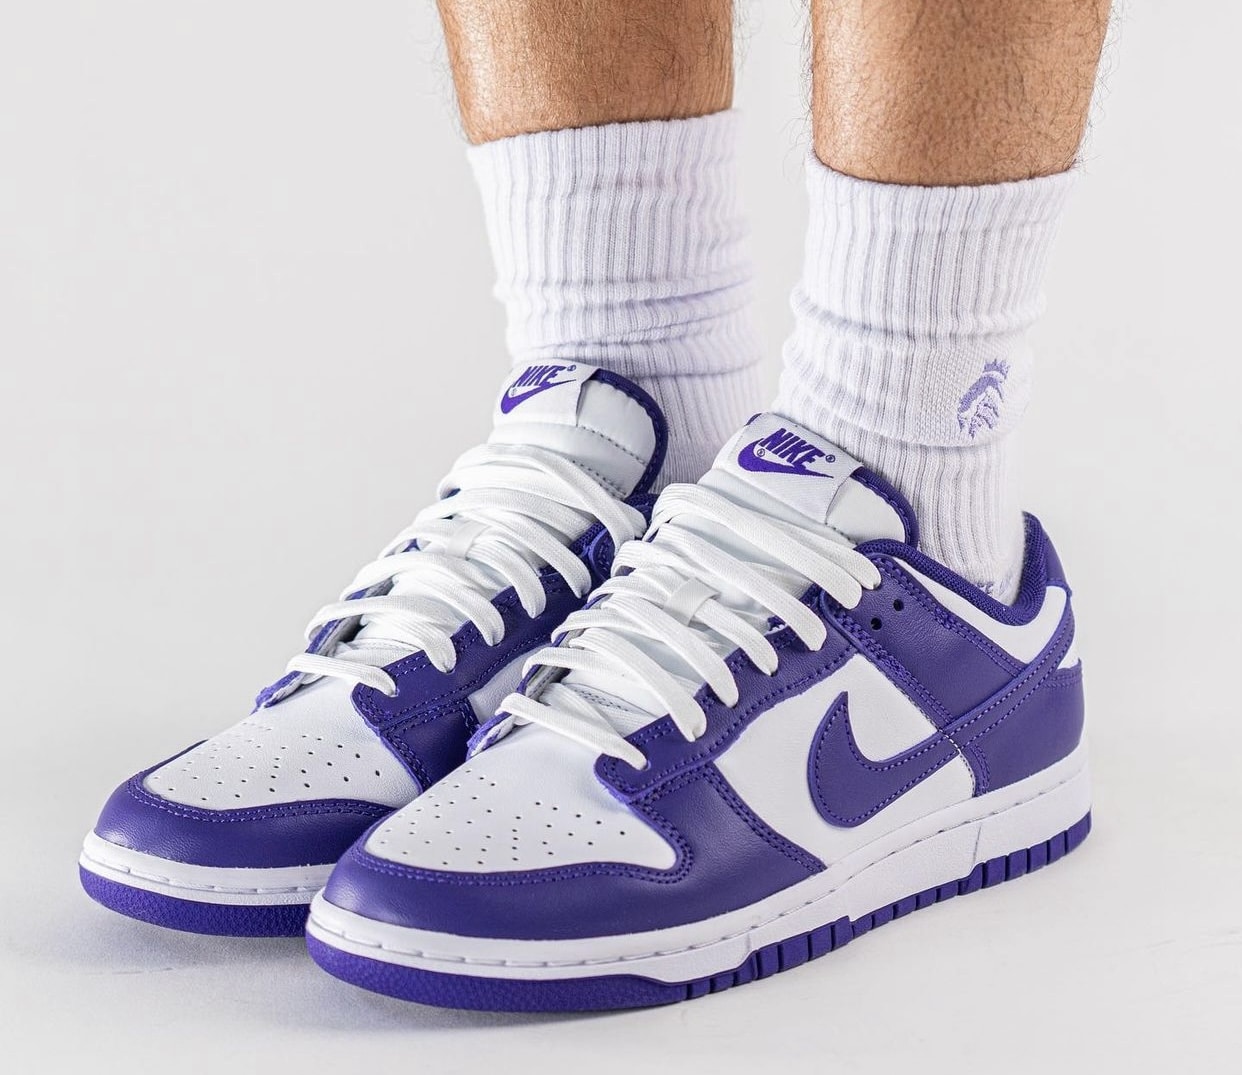 Nike Dunk Low Court Purple DD1391 104 Release Date On Feet 1 